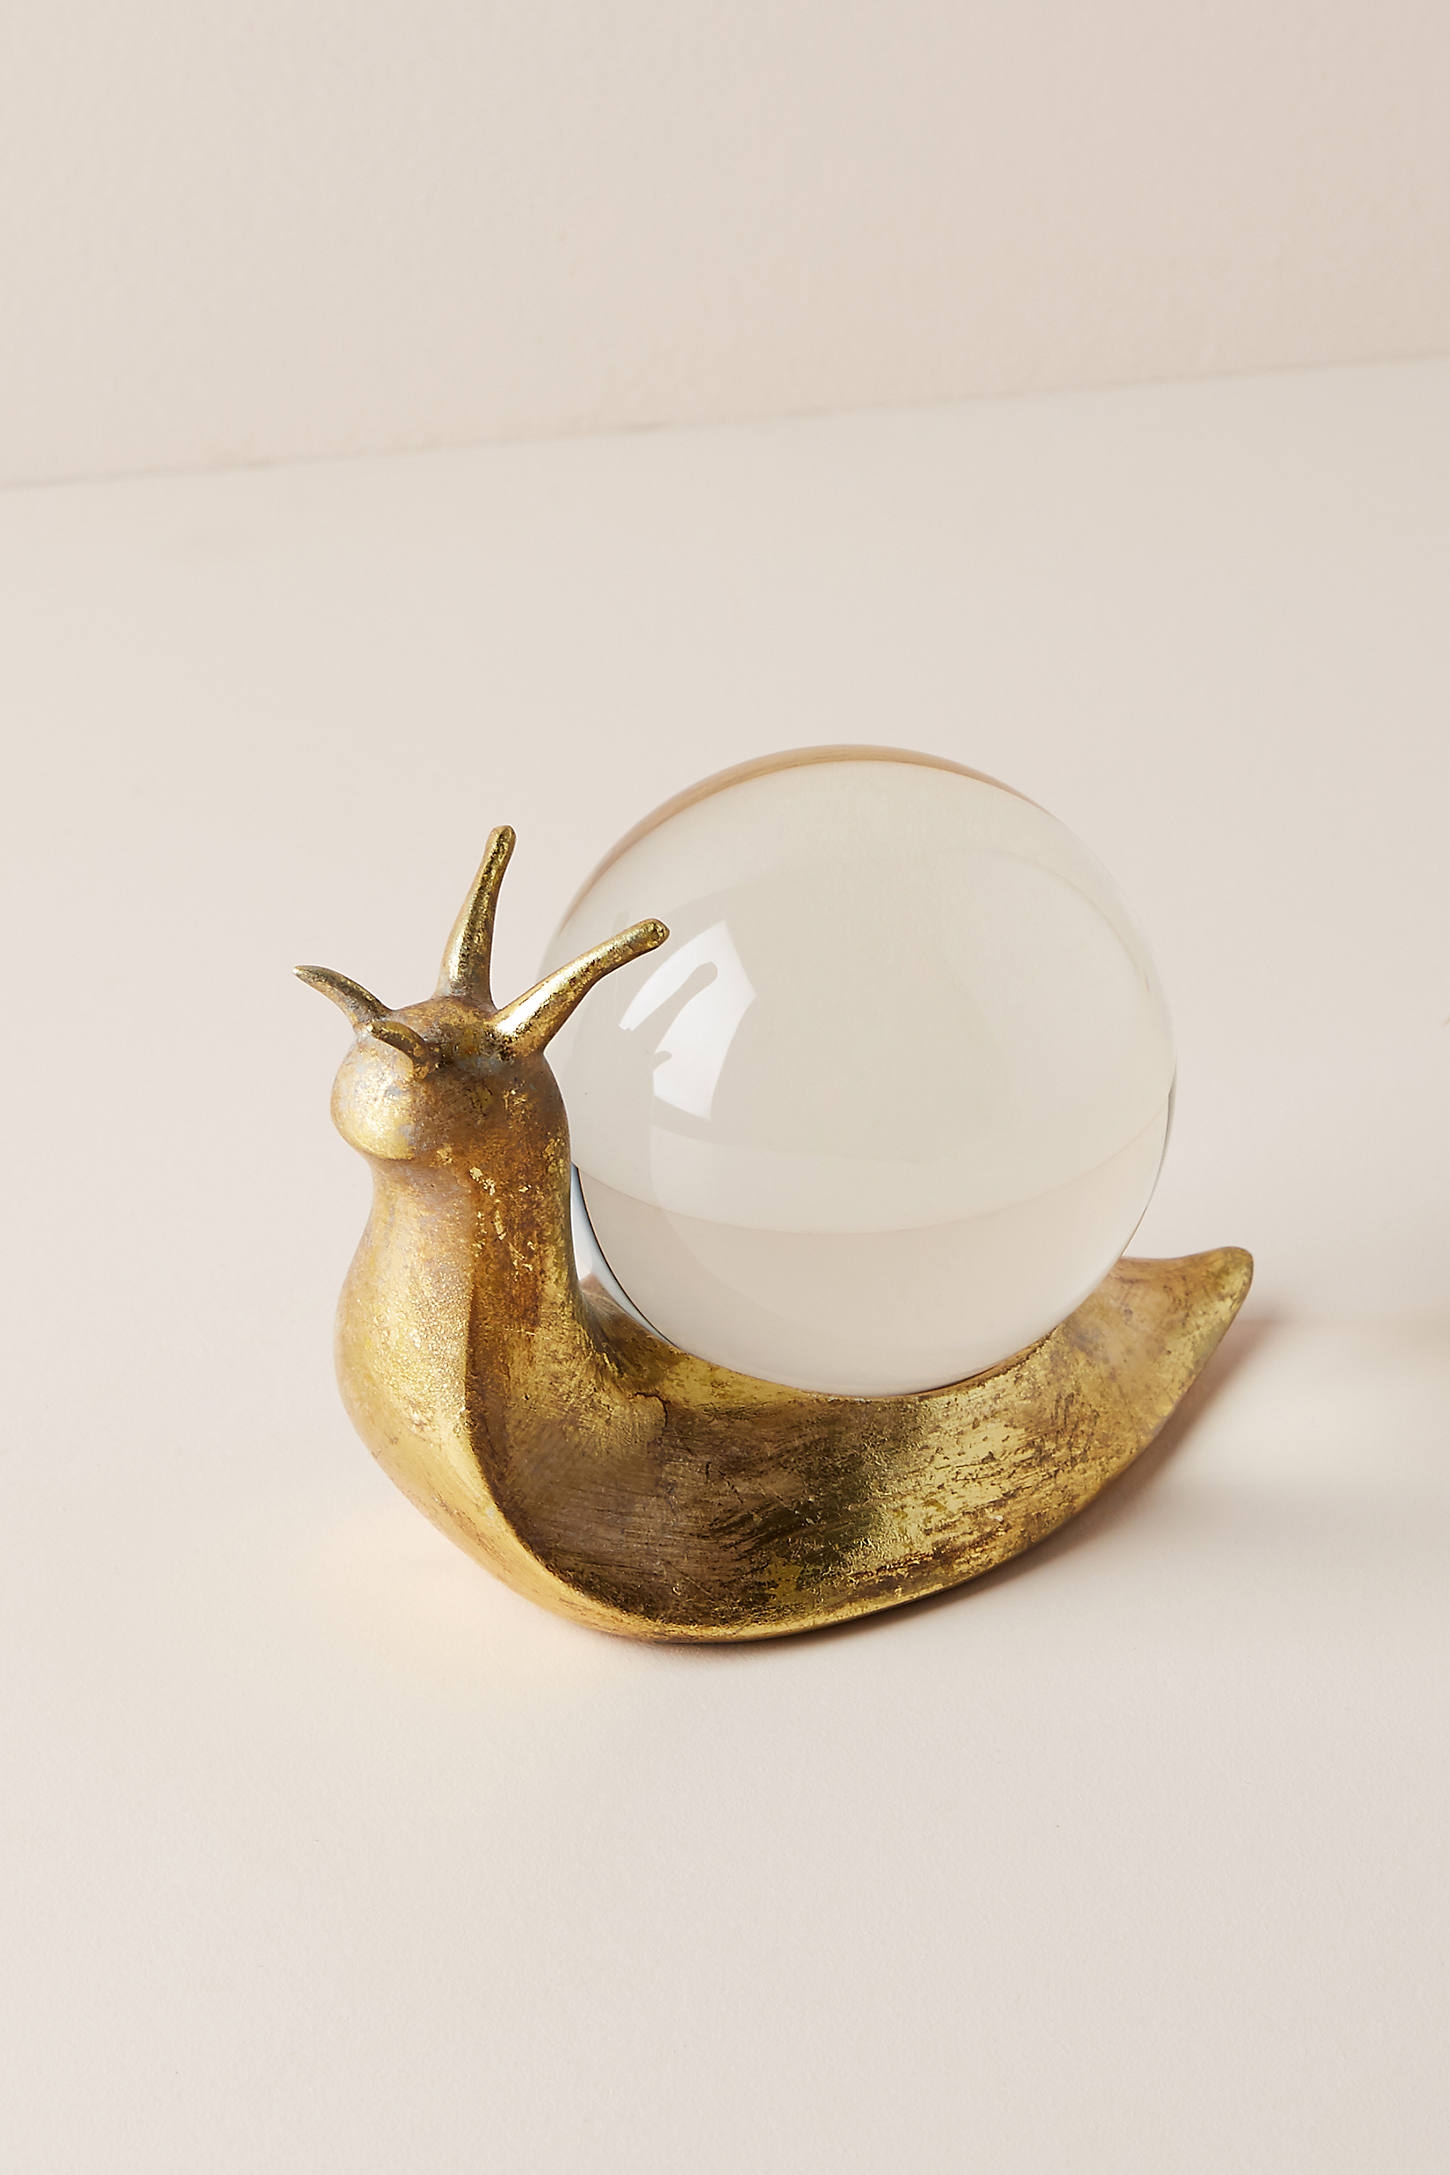 Snail Decorative Object, Gold - Image 0